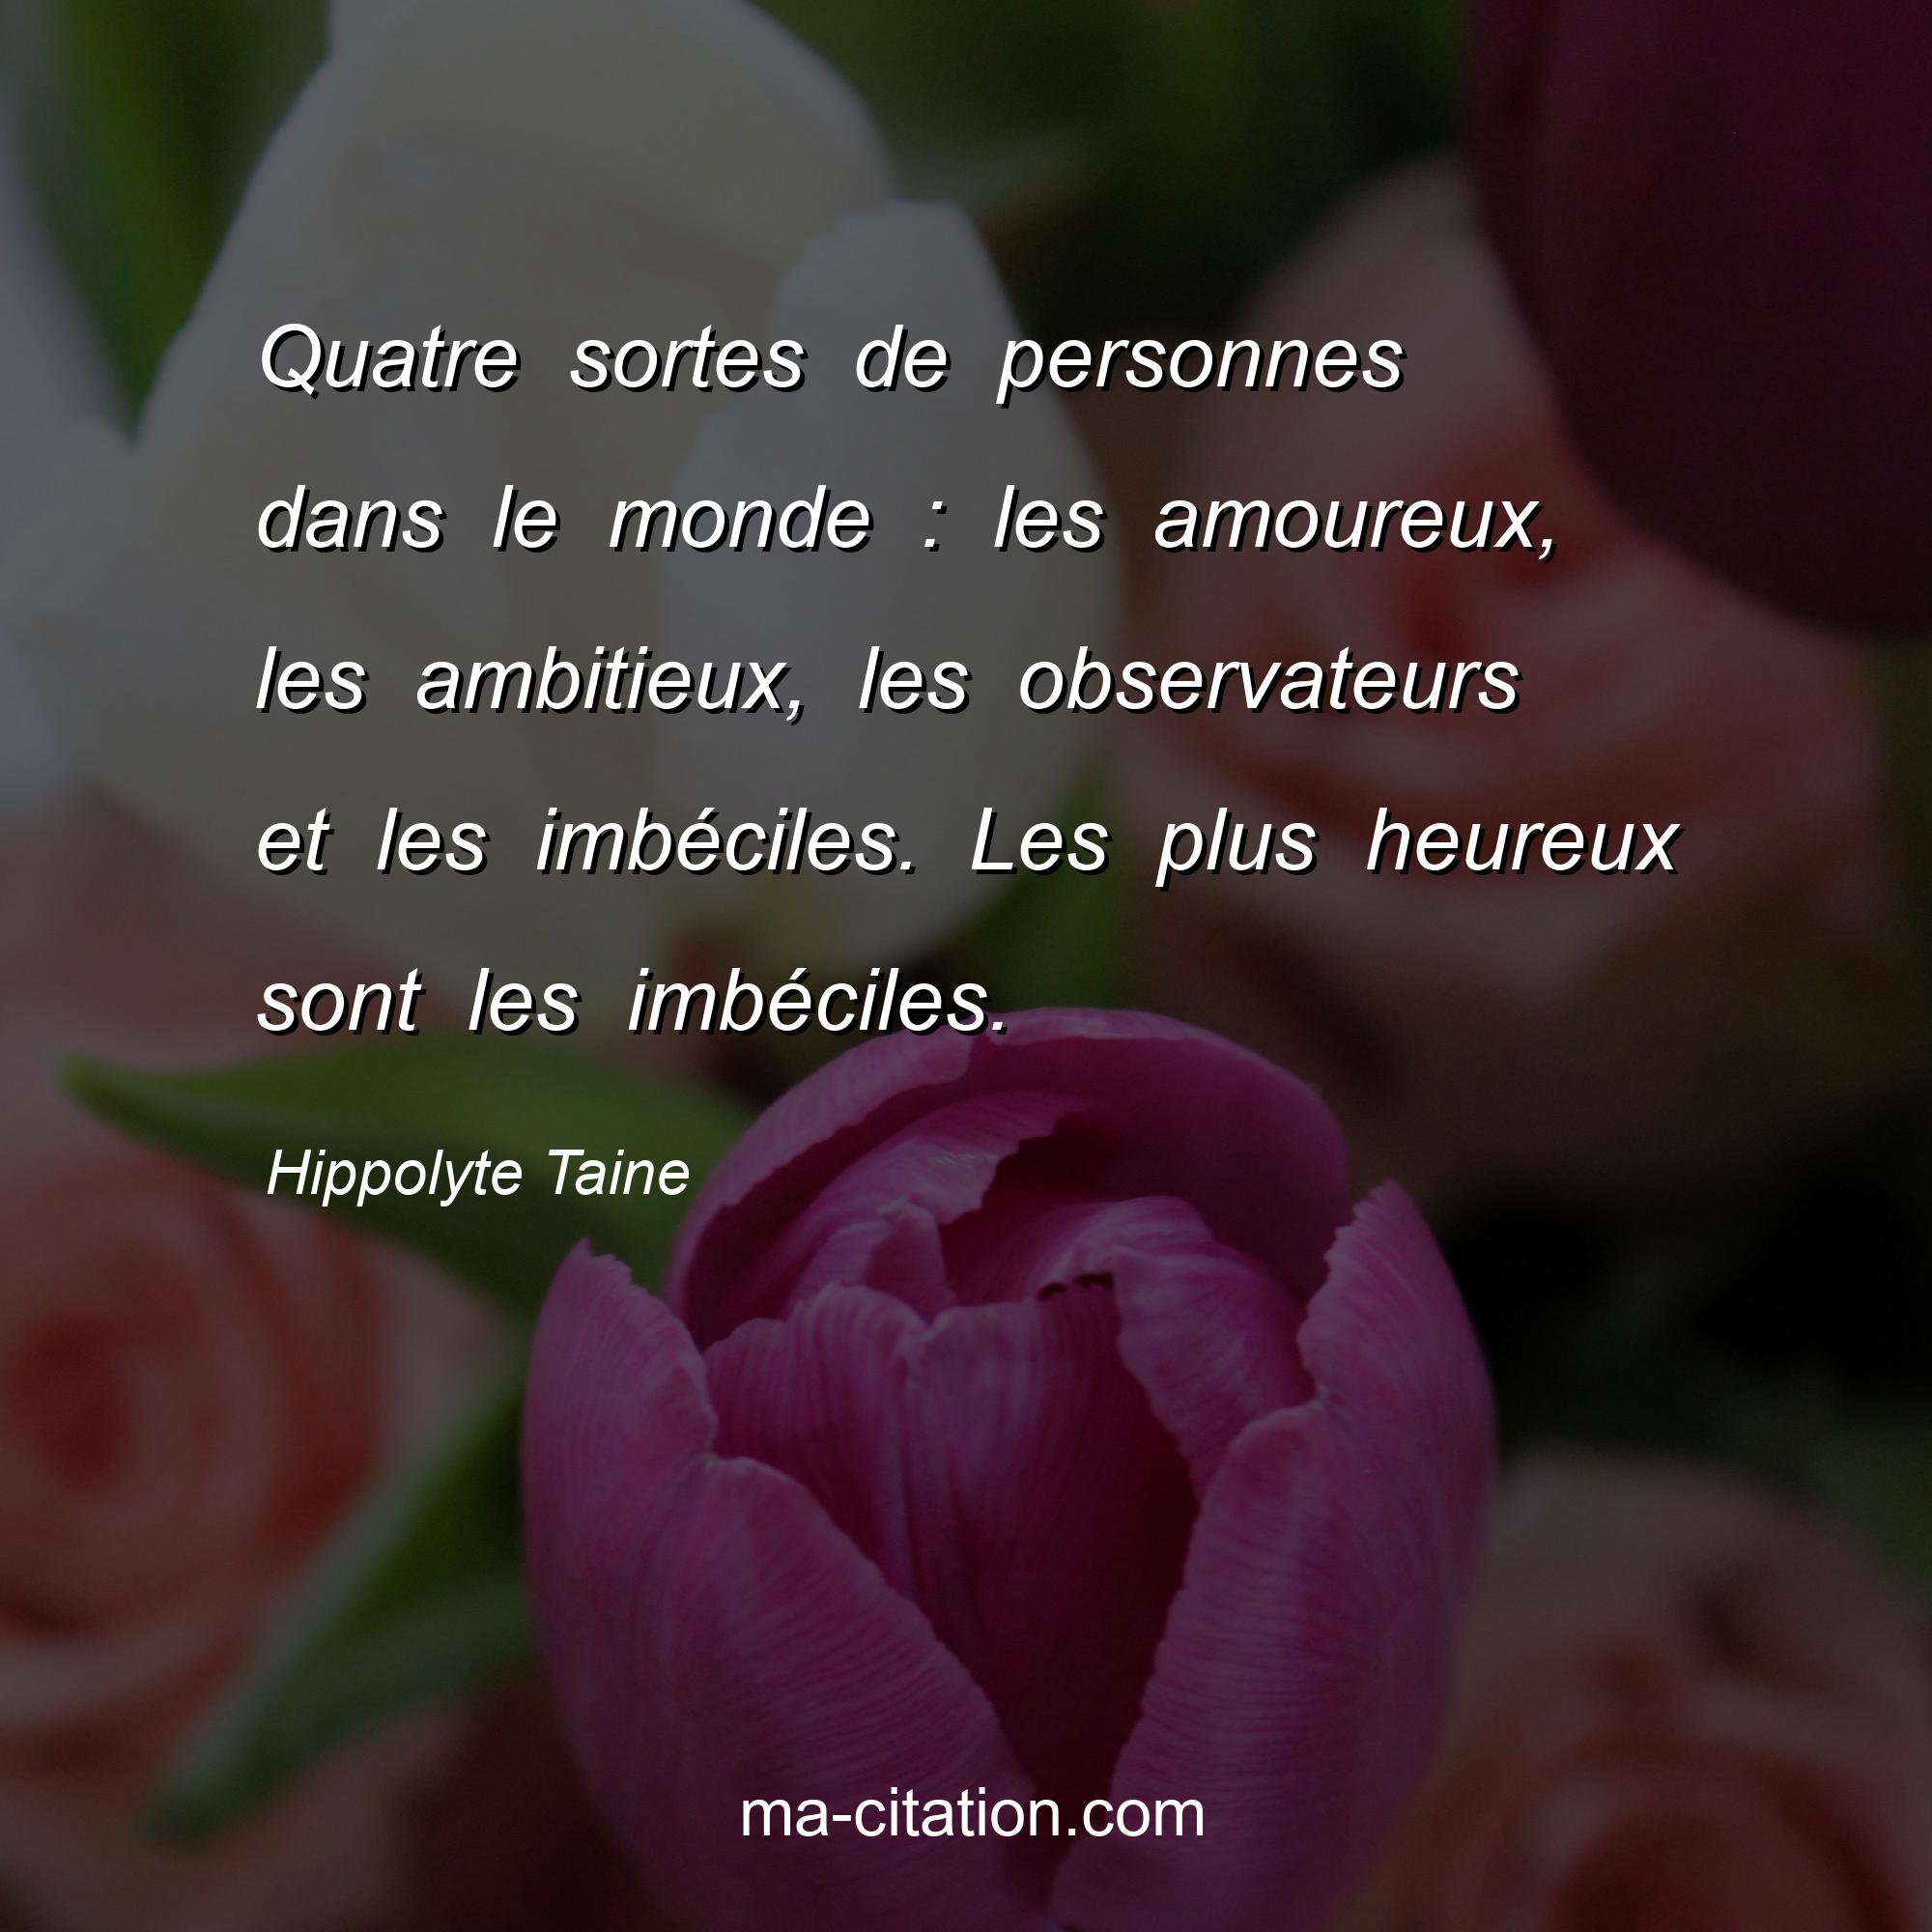 Hippolyte Taine : Quatre sortes de personnes dans le monde : les amoureux, les ambitieux, les observateurs et les imbéciles. Les plus heureux sont les imbéciles.